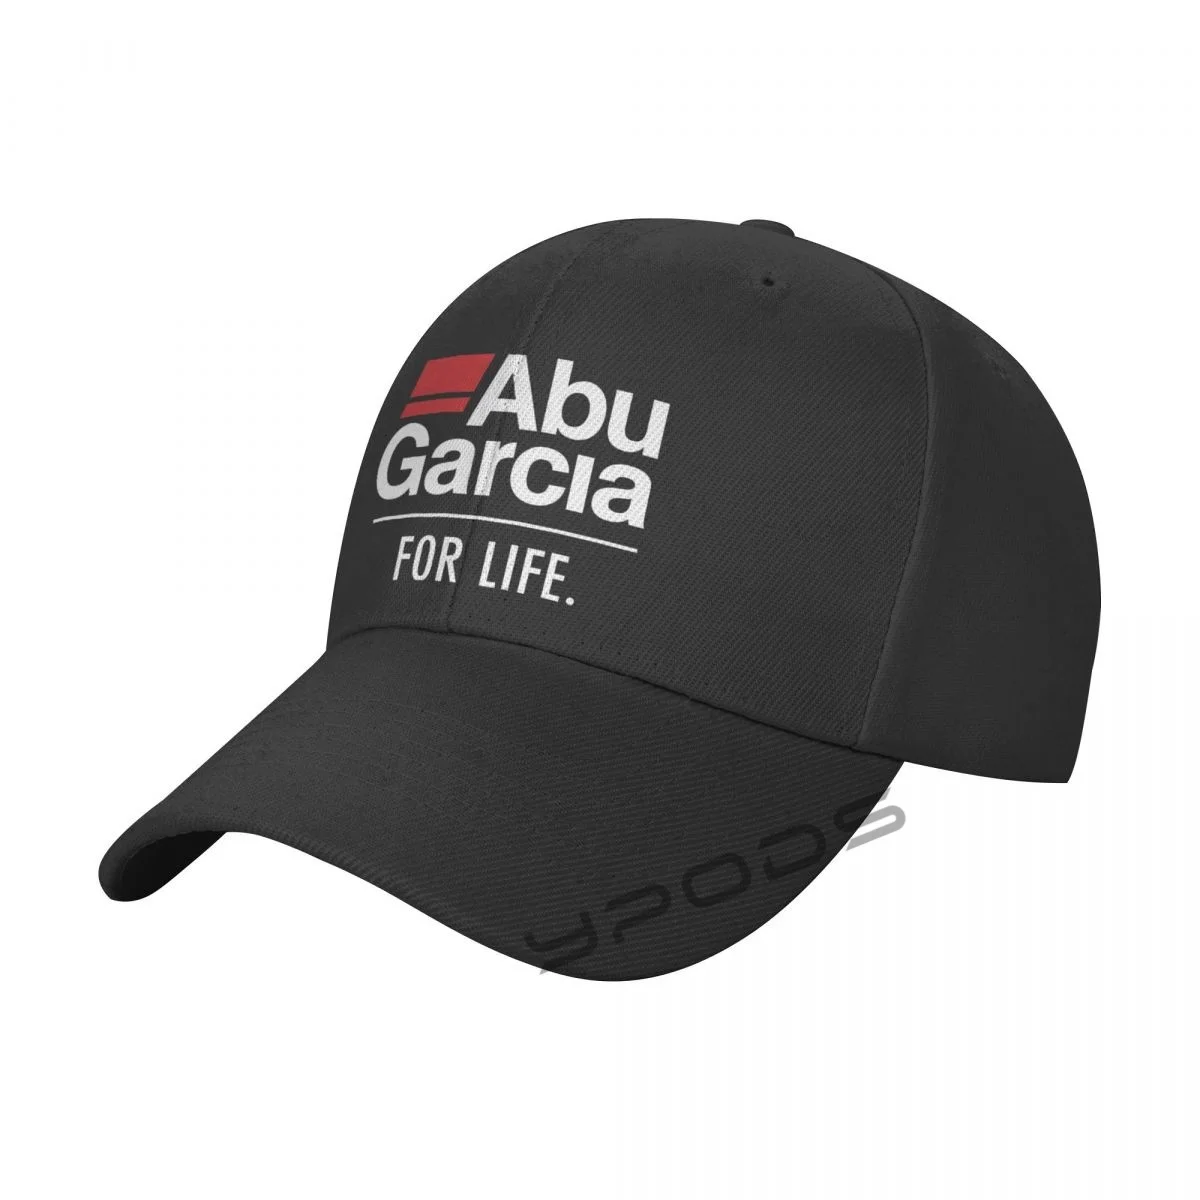 

Бейсболка для занятий спортом на открытом воздухе Abu Garcia For Life, модные регулируемые кепки для мужчин и женщин на весну и лето